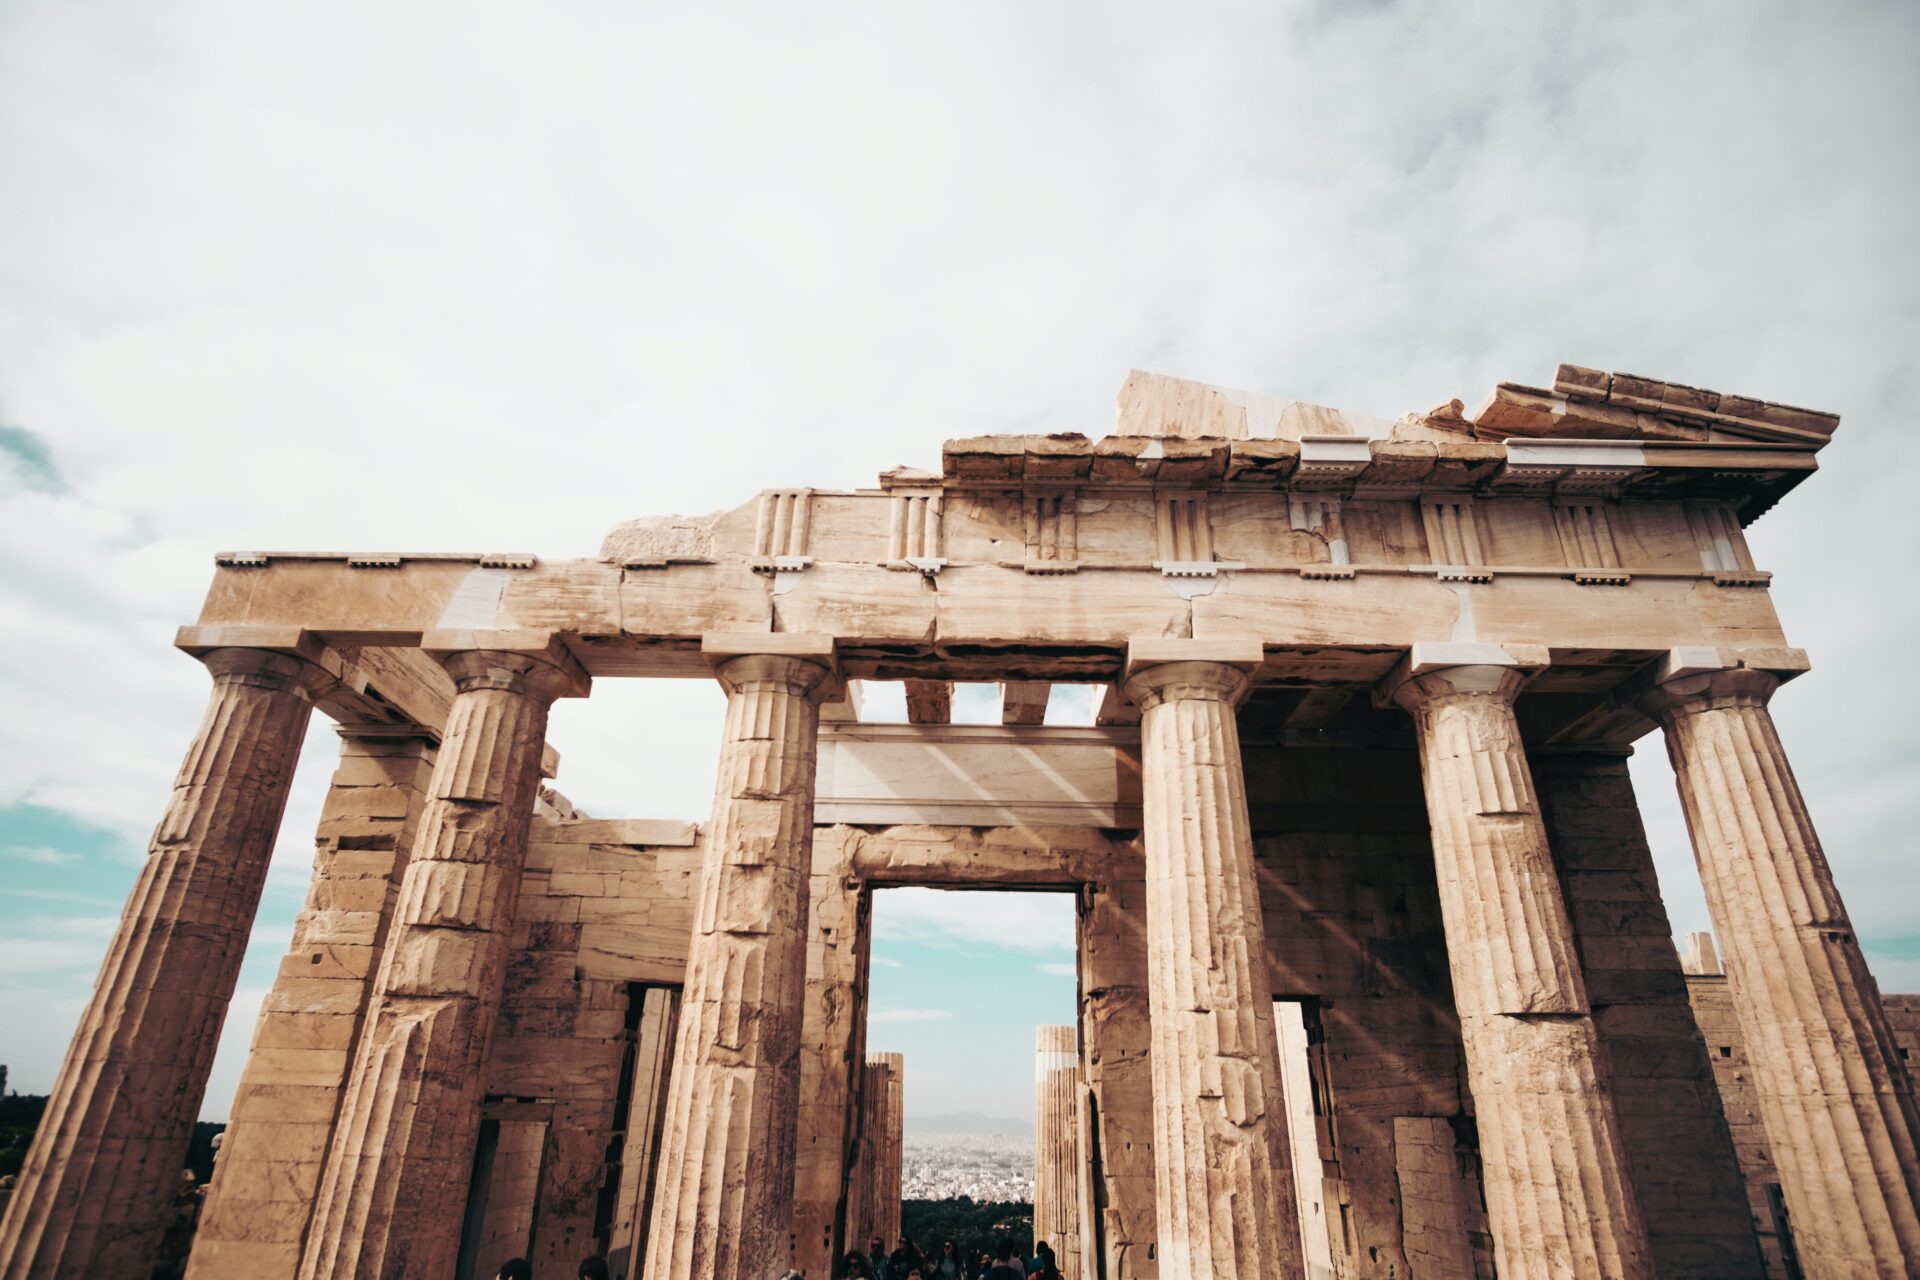 Facade of the Parthenon of the Acropolis of Athen